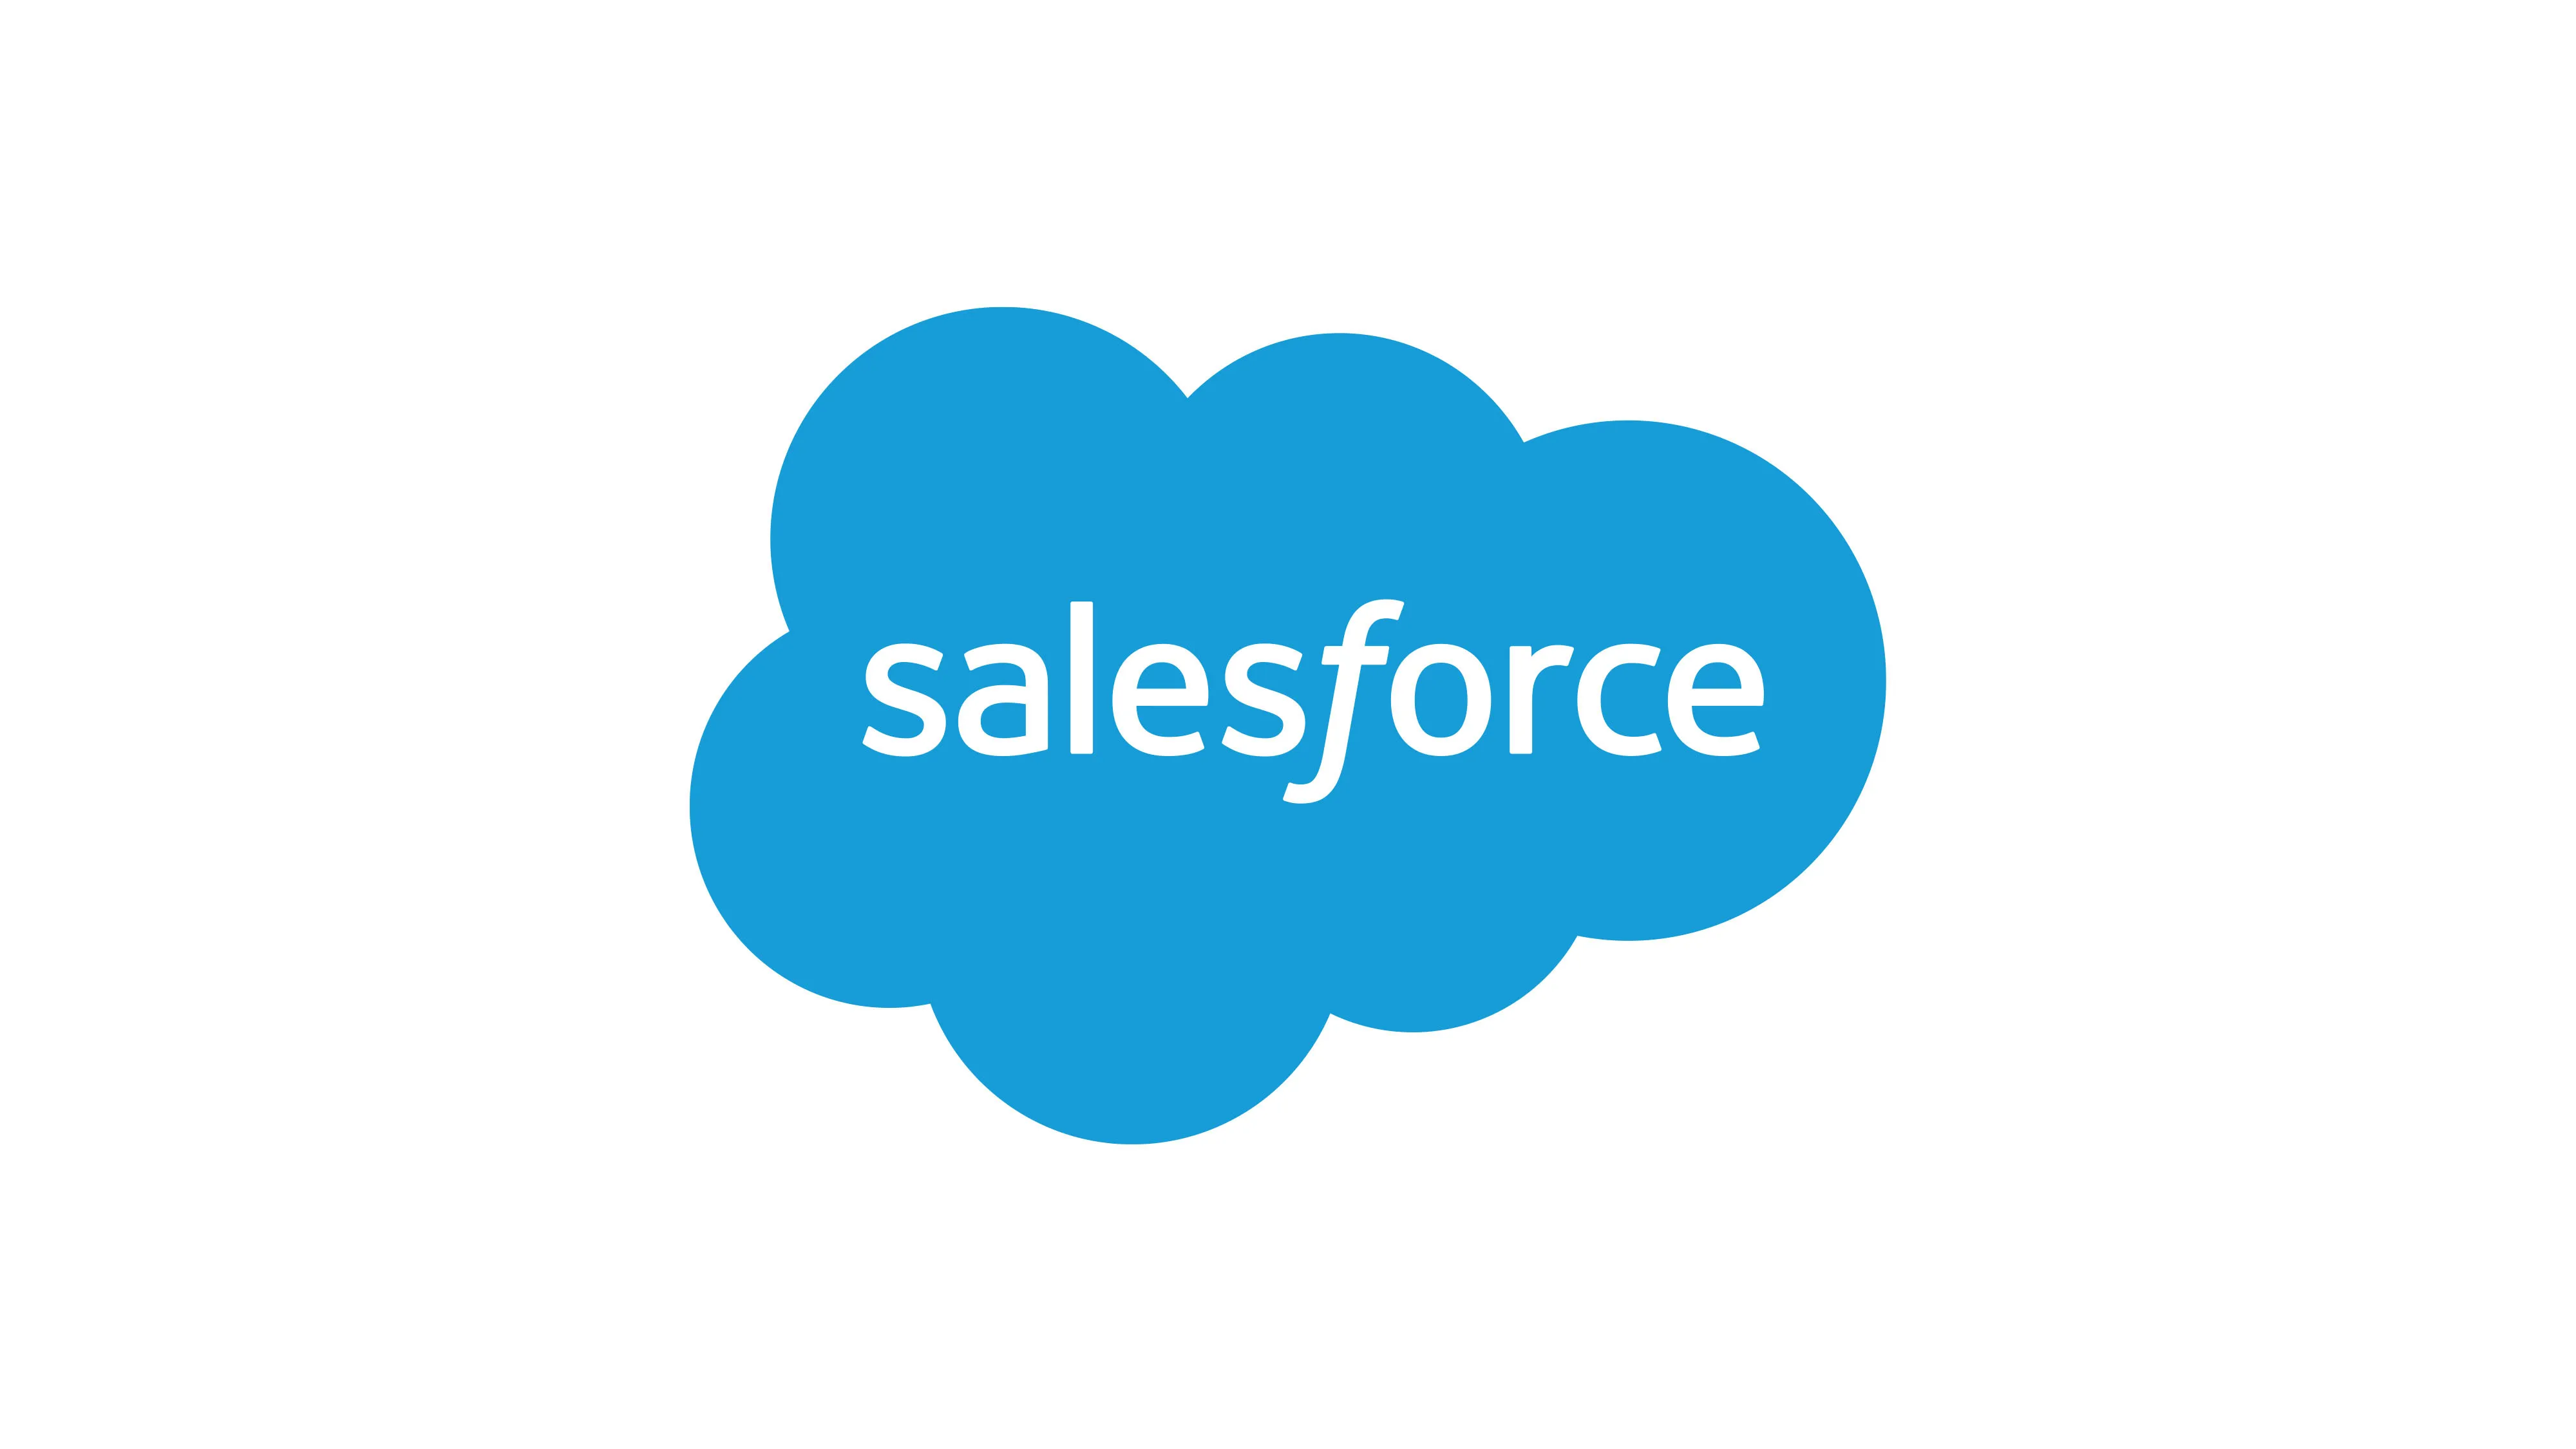 [Salesforce Configuration Guide](https://docs.monetizenow.io/docs/salesforce-configuration-guide)

